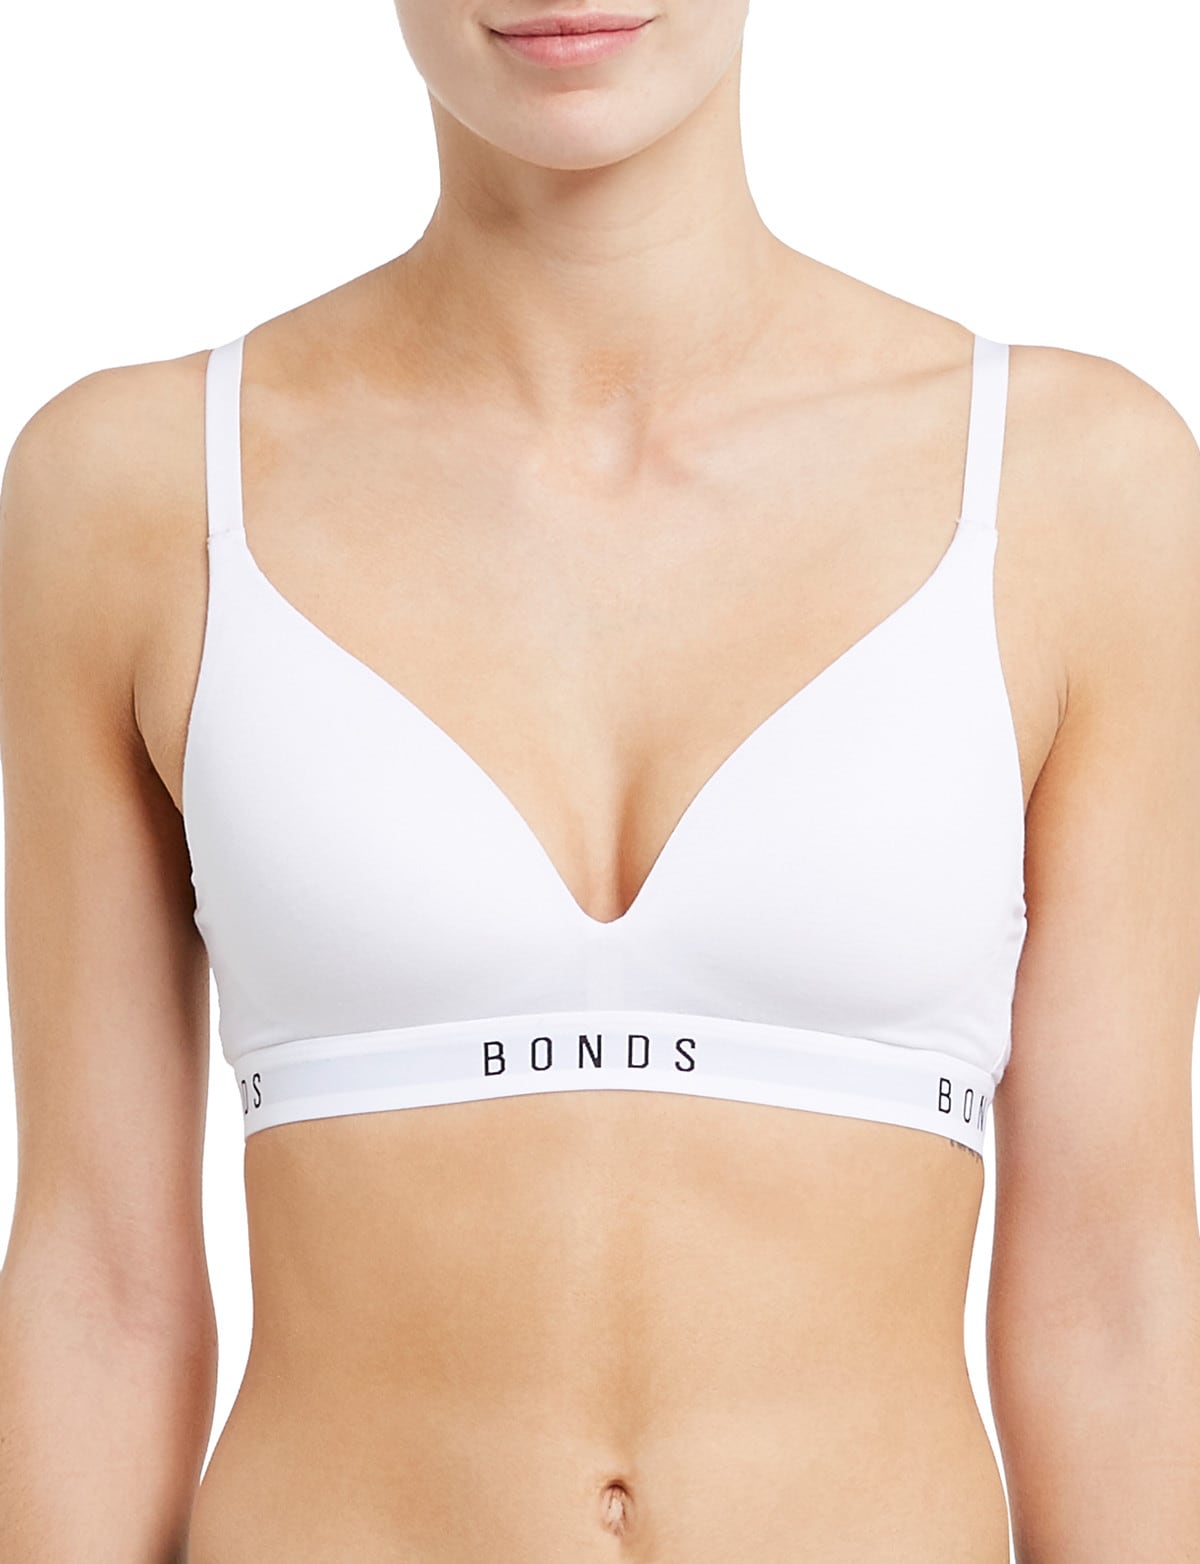 Bonds Womens Originals Superior Fit Tee Bra, White,38C - US